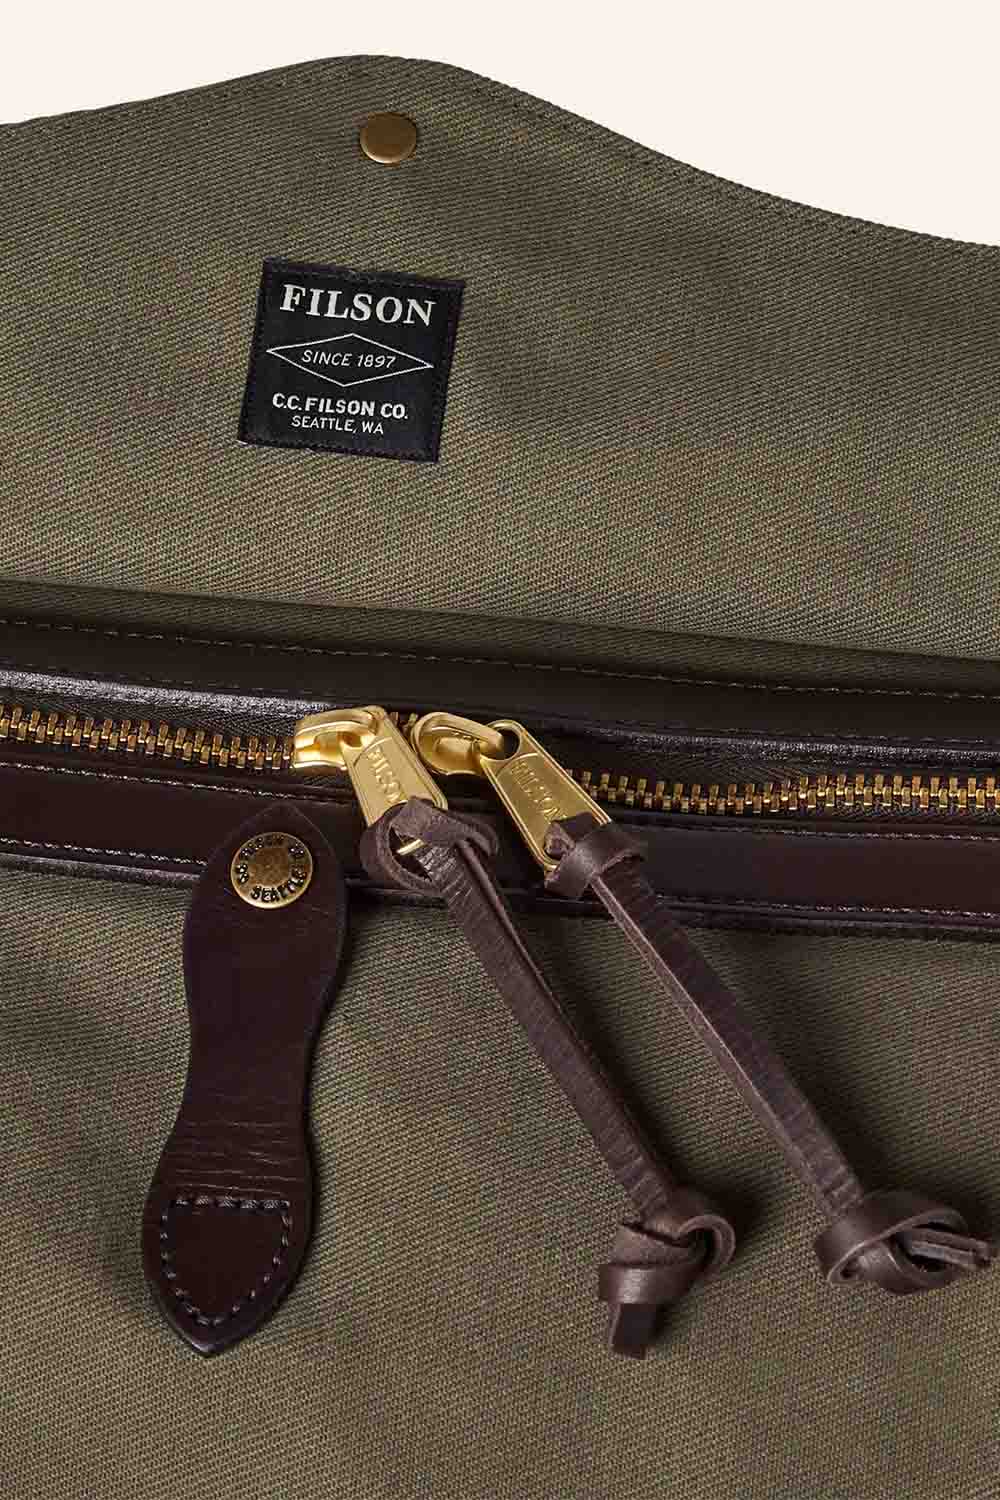 Filson - Medium Duffle Bag - Otter Green - Zipper